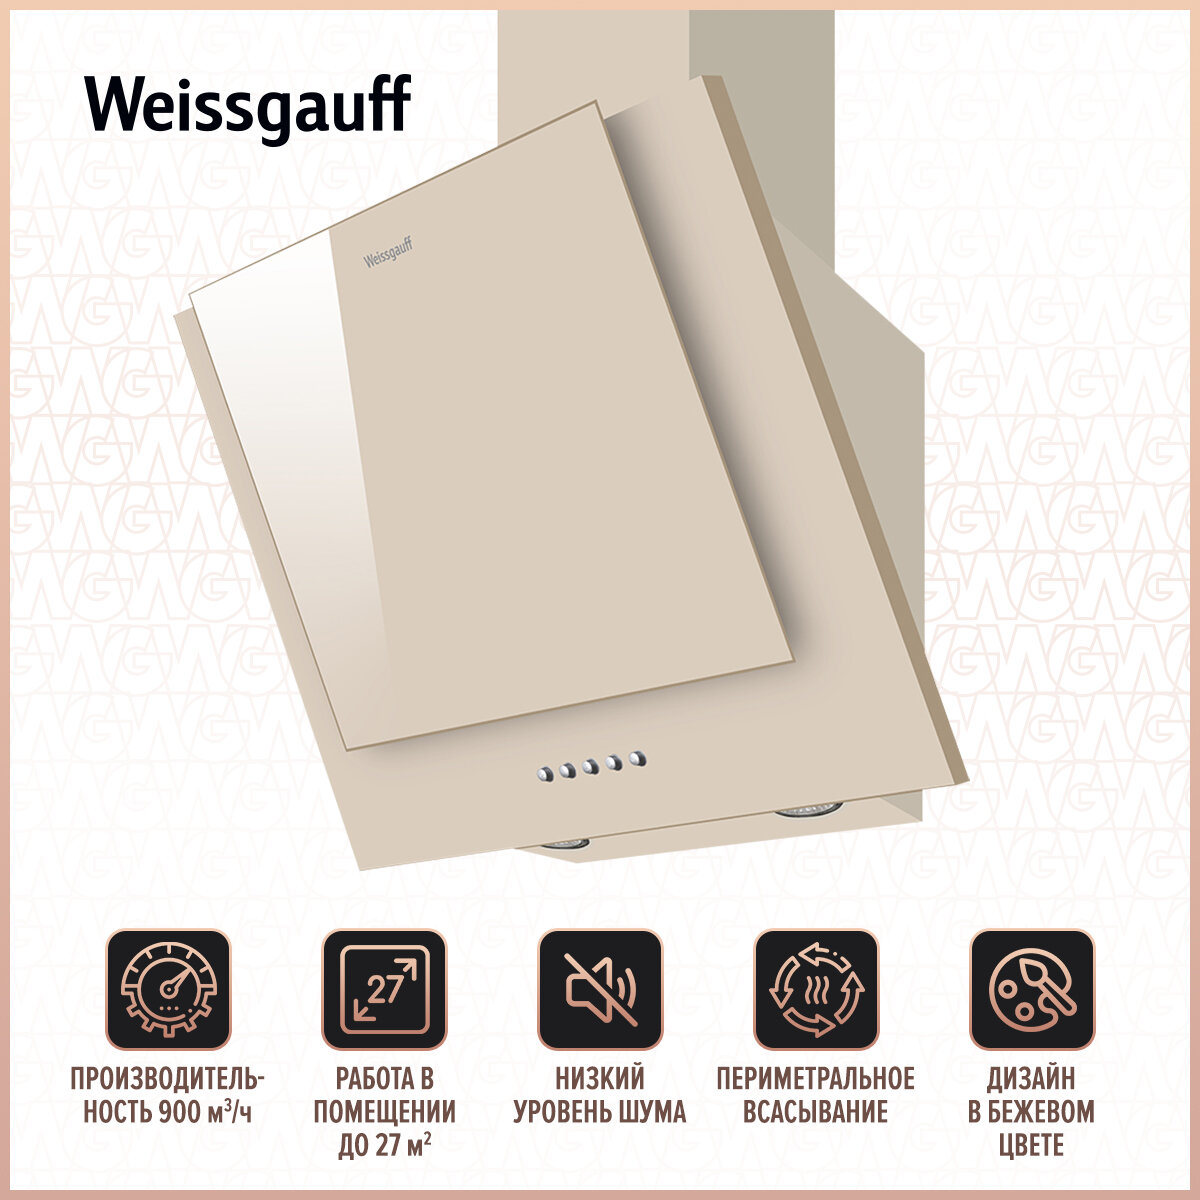 Вытяжка Weissgauff GAMMA 50 PB OW 3 года гарантии, Алюминиевый жировой фильтр, Низкий уровень шума